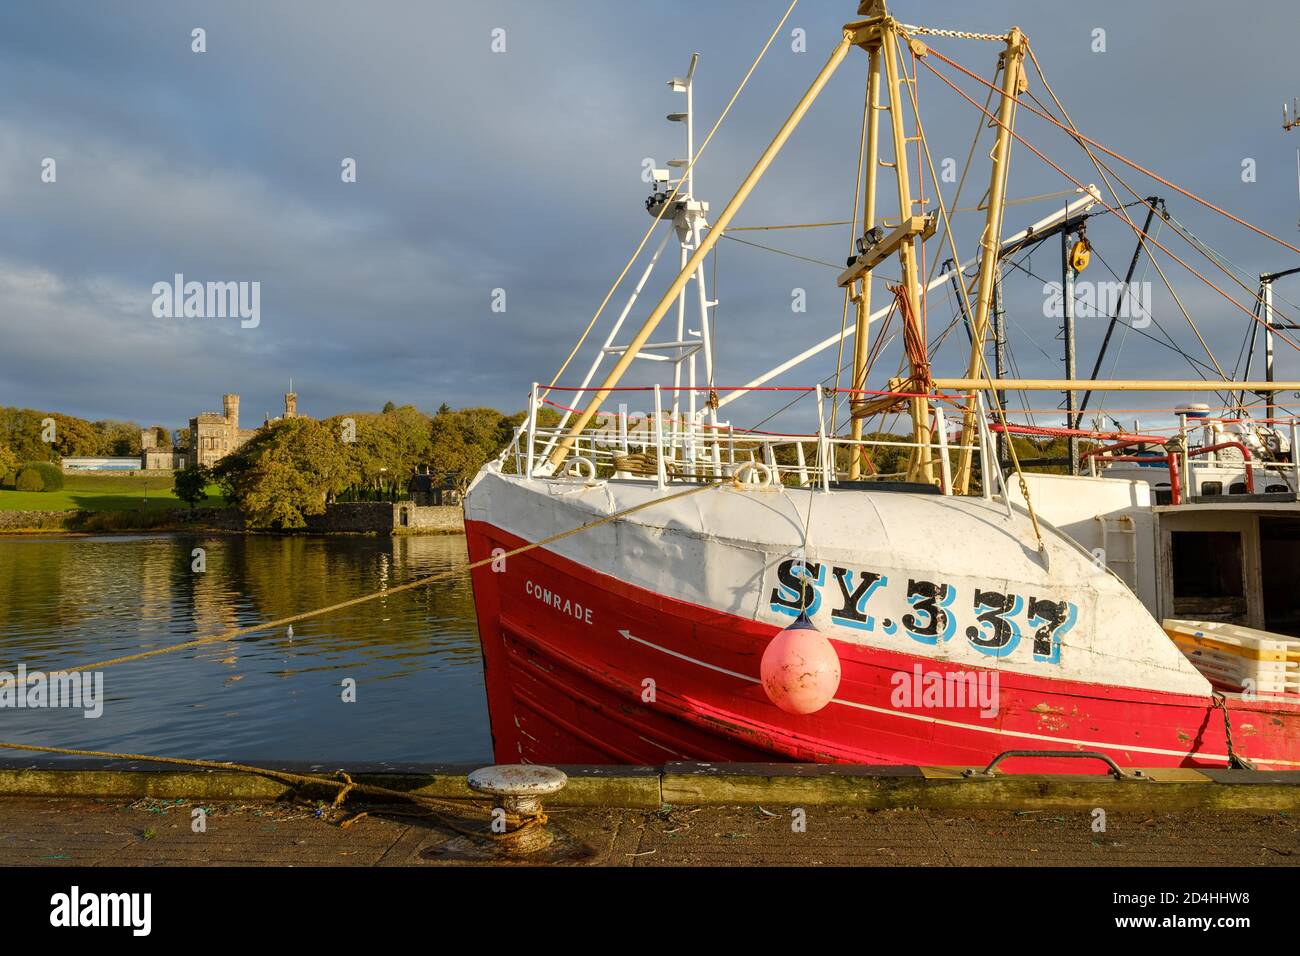 Le bateau de pêche Stornoway «Comrade», SY337, amarré dans le port intérieur. Banque D'Images